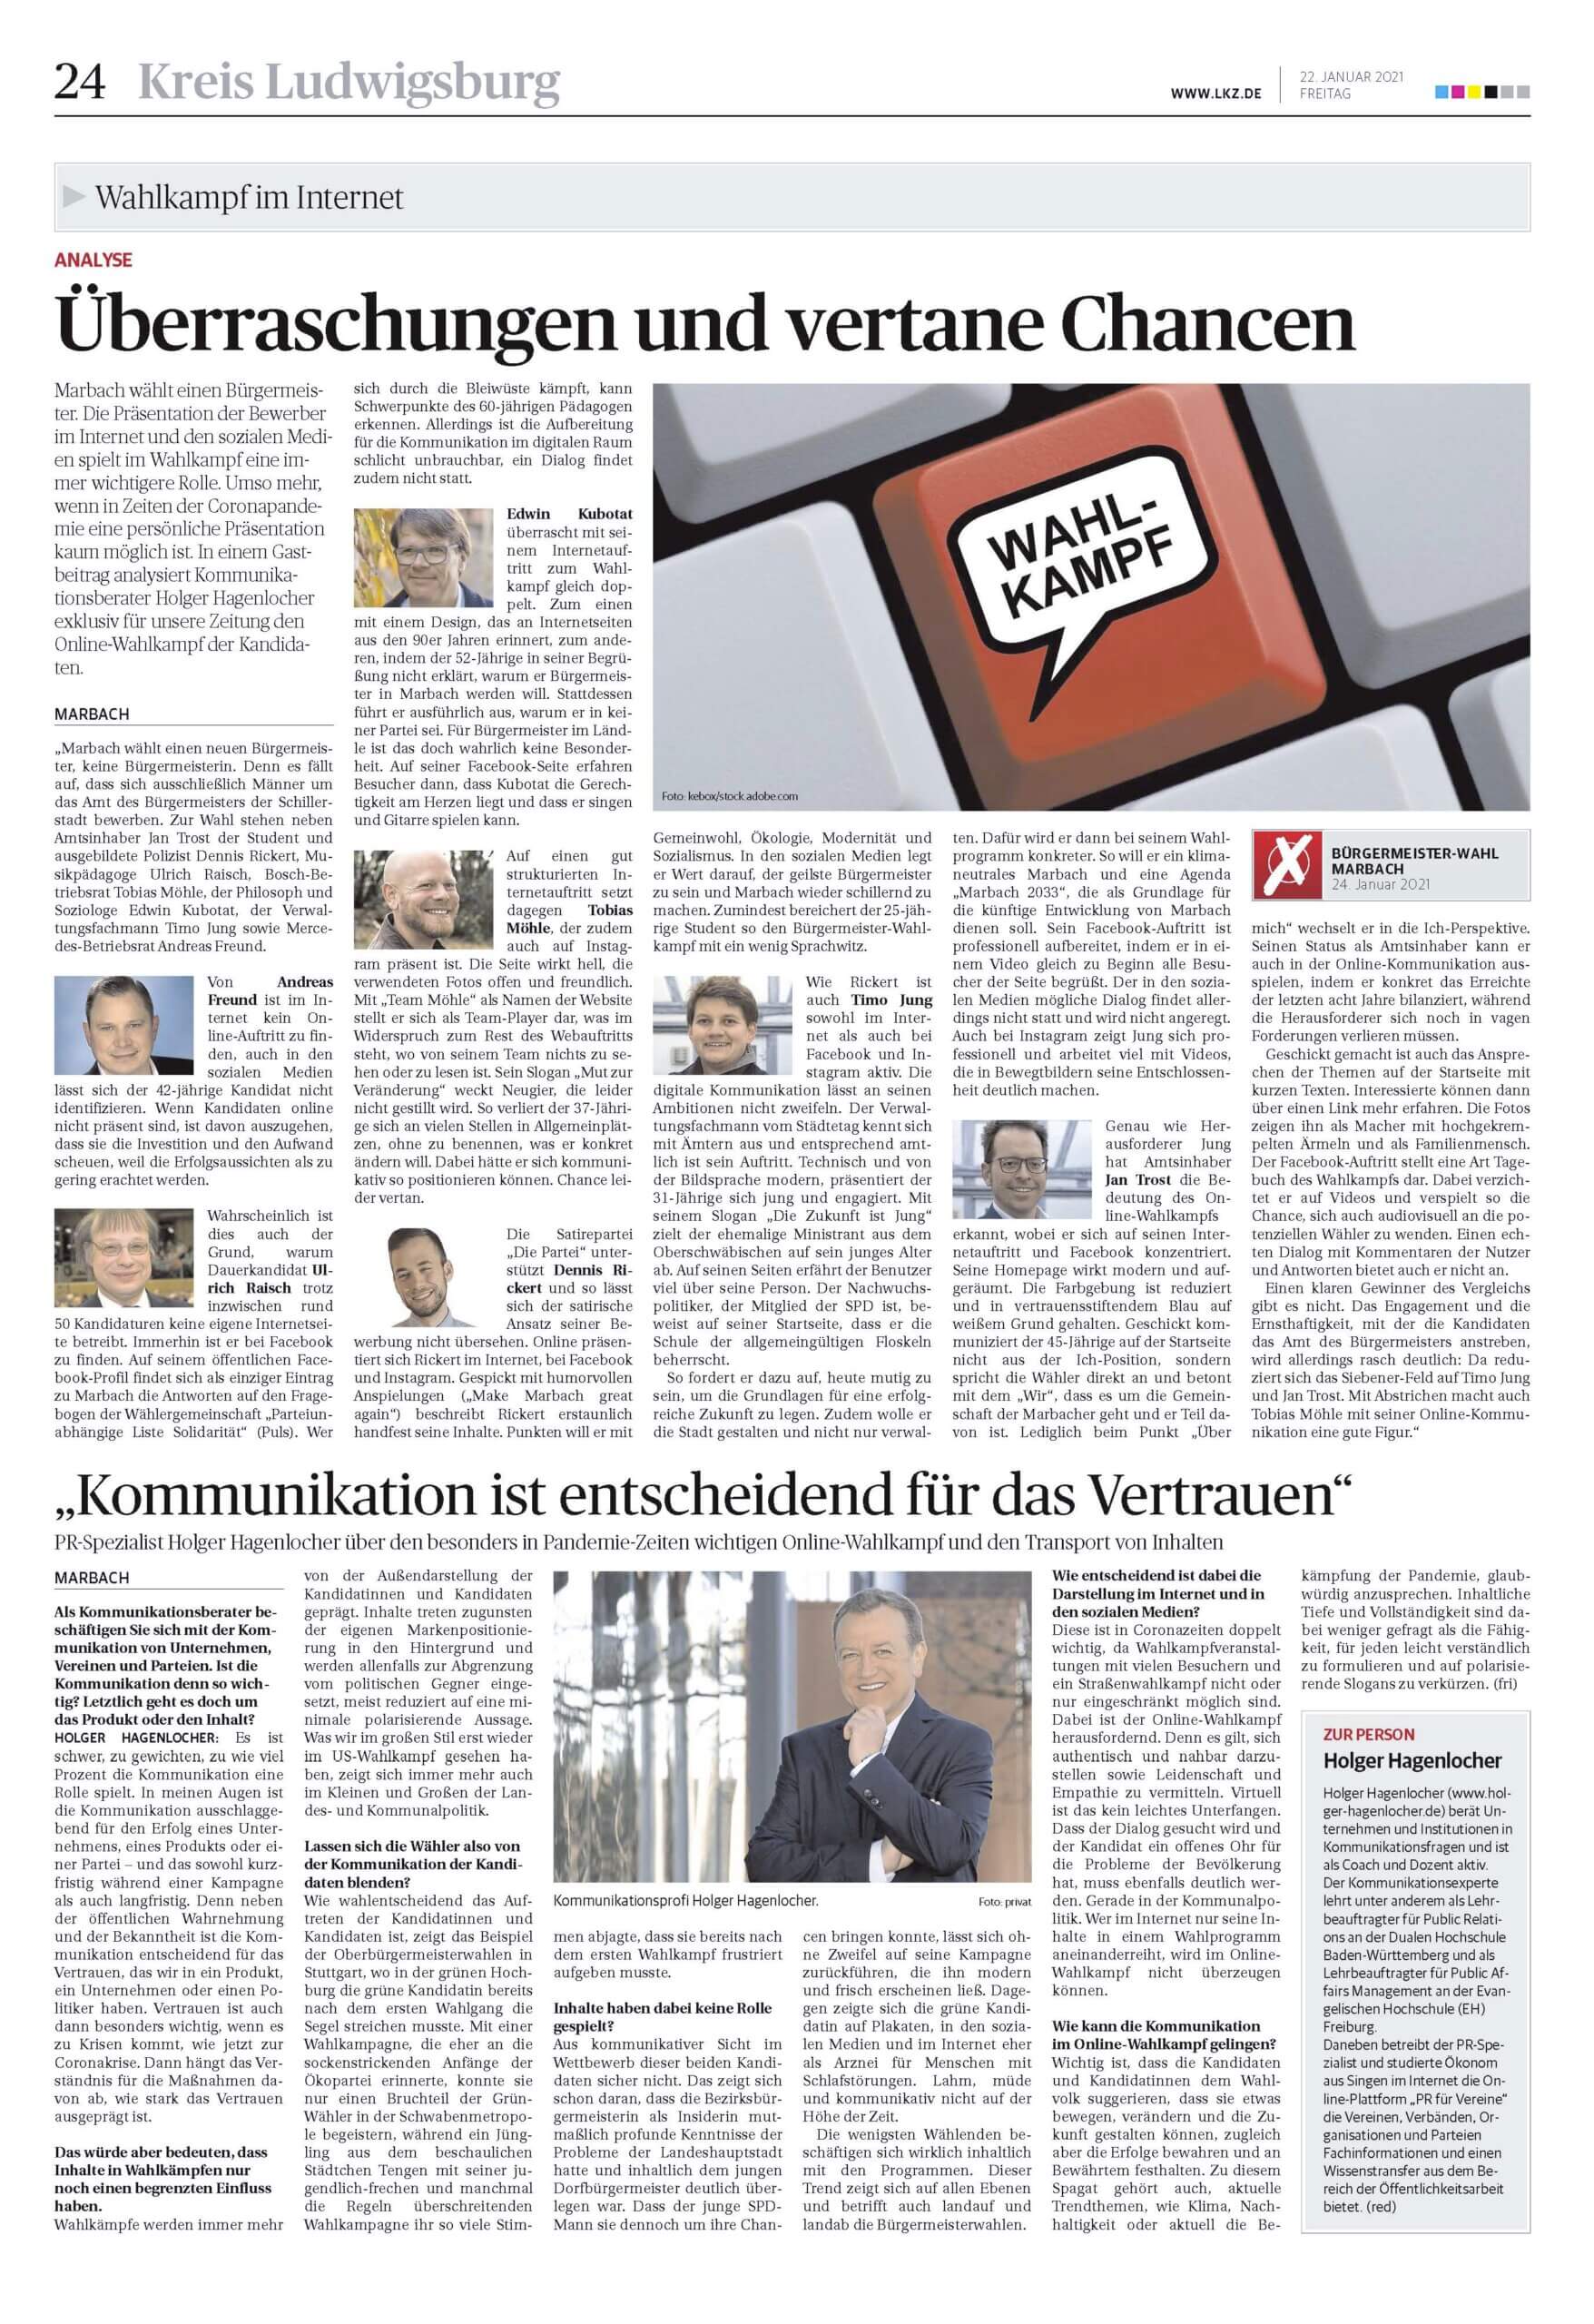 Gastbeitrag in der Ludwigsburger Kreiszeitung und Interview zum Online-Wahlkampf zur Bürgermeisterwahl in der Schillerstadt Marbach am Neckar